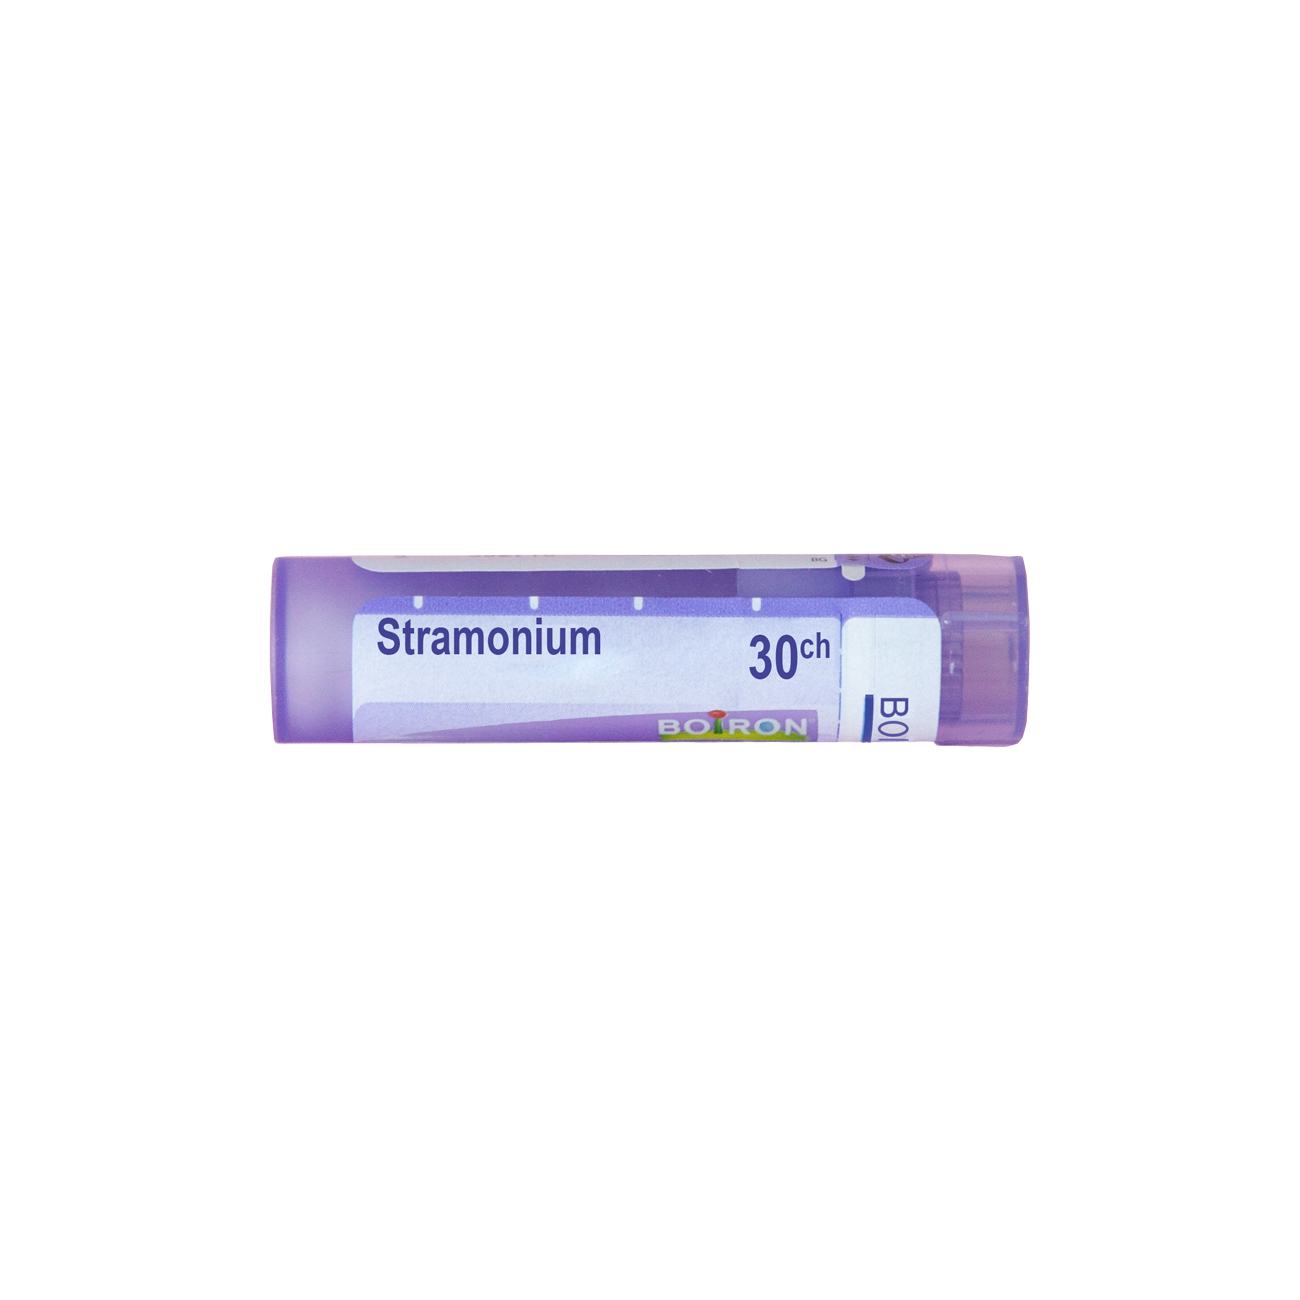 Страмониум 30 СН - Boiron - Аптеки 36.6